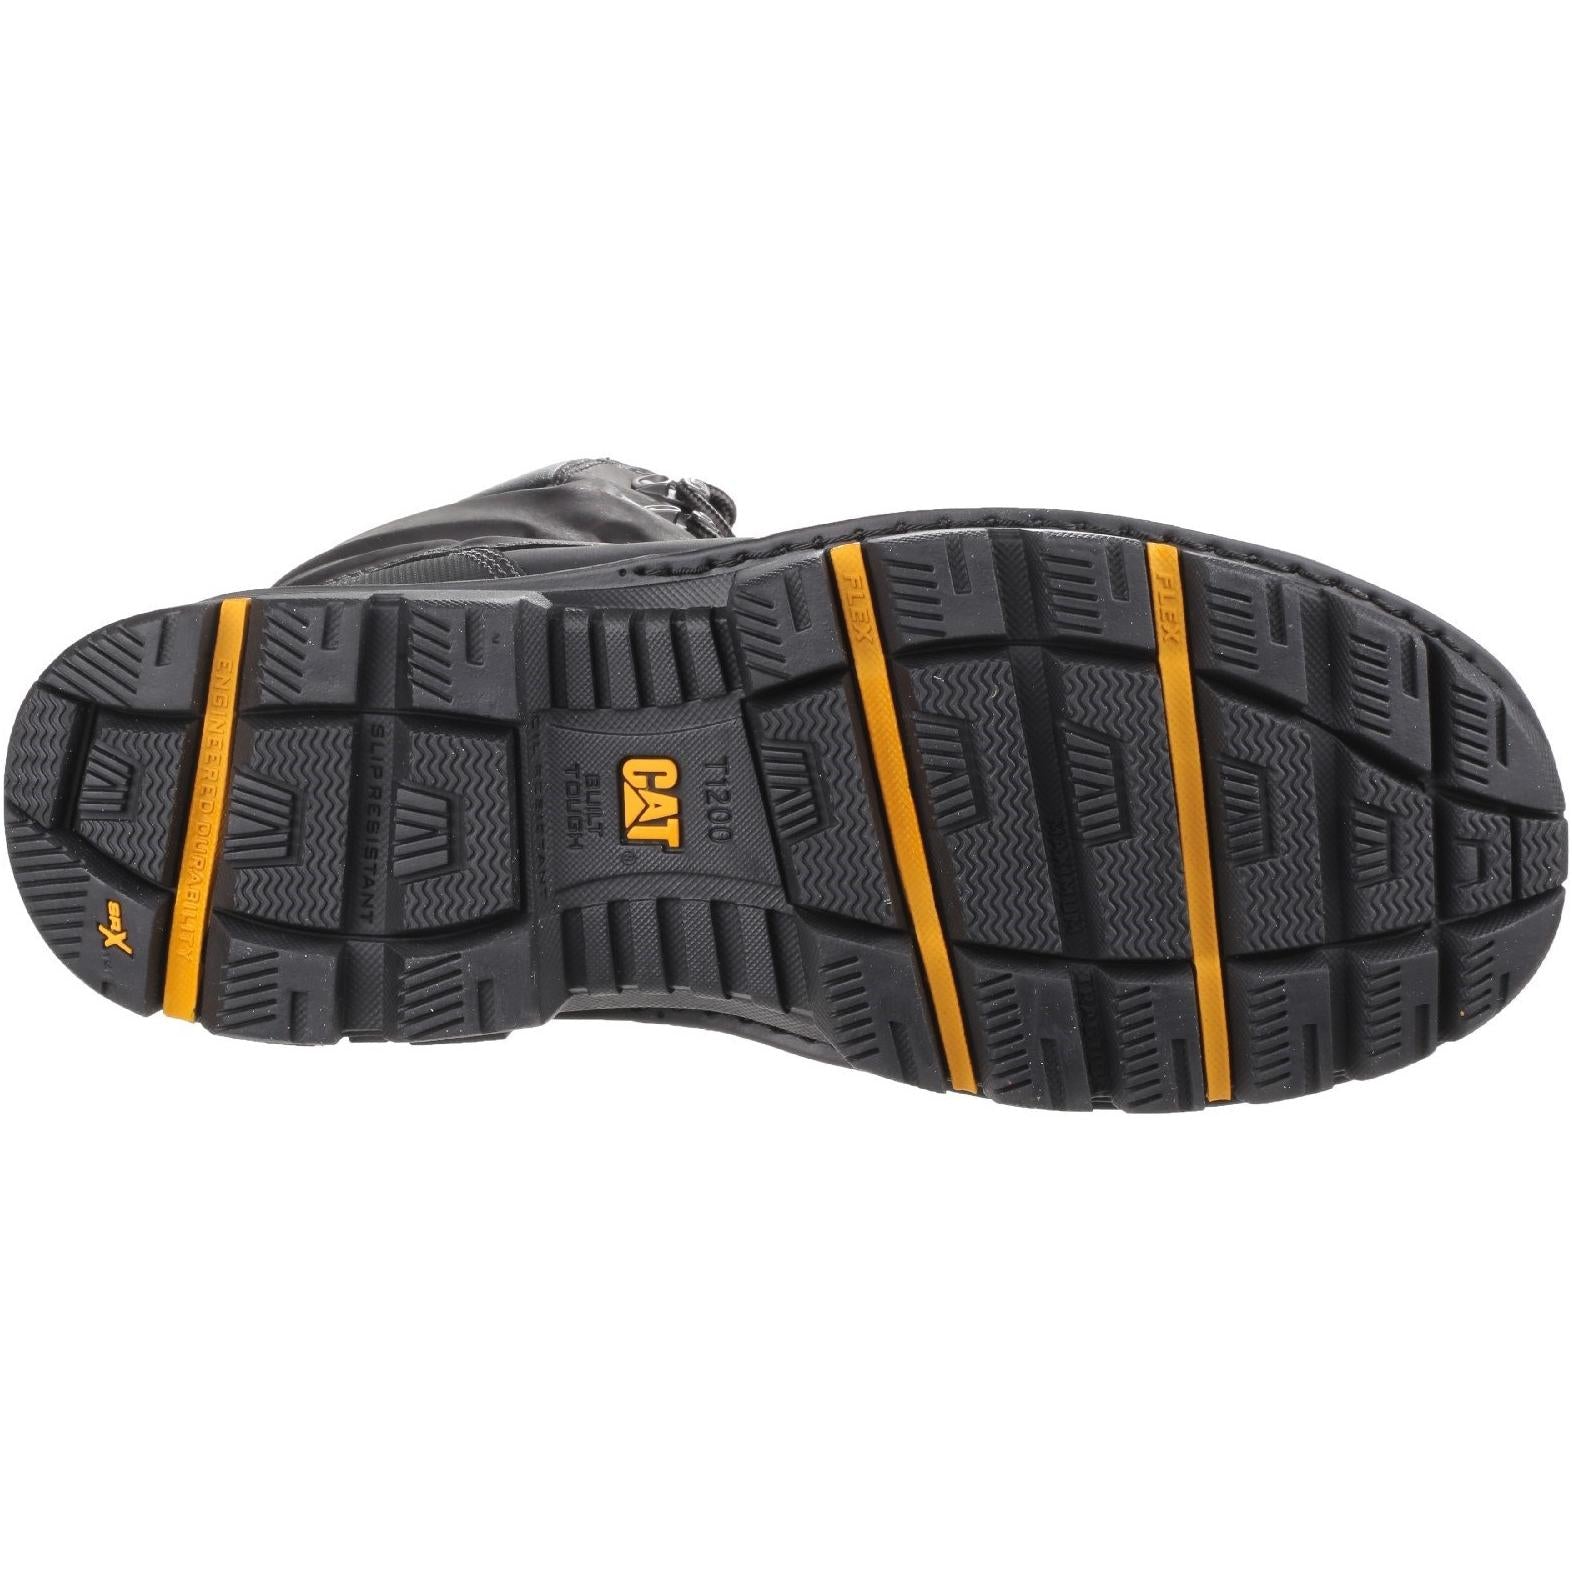 Cat Footwear Premier Waterproof Safety Boot